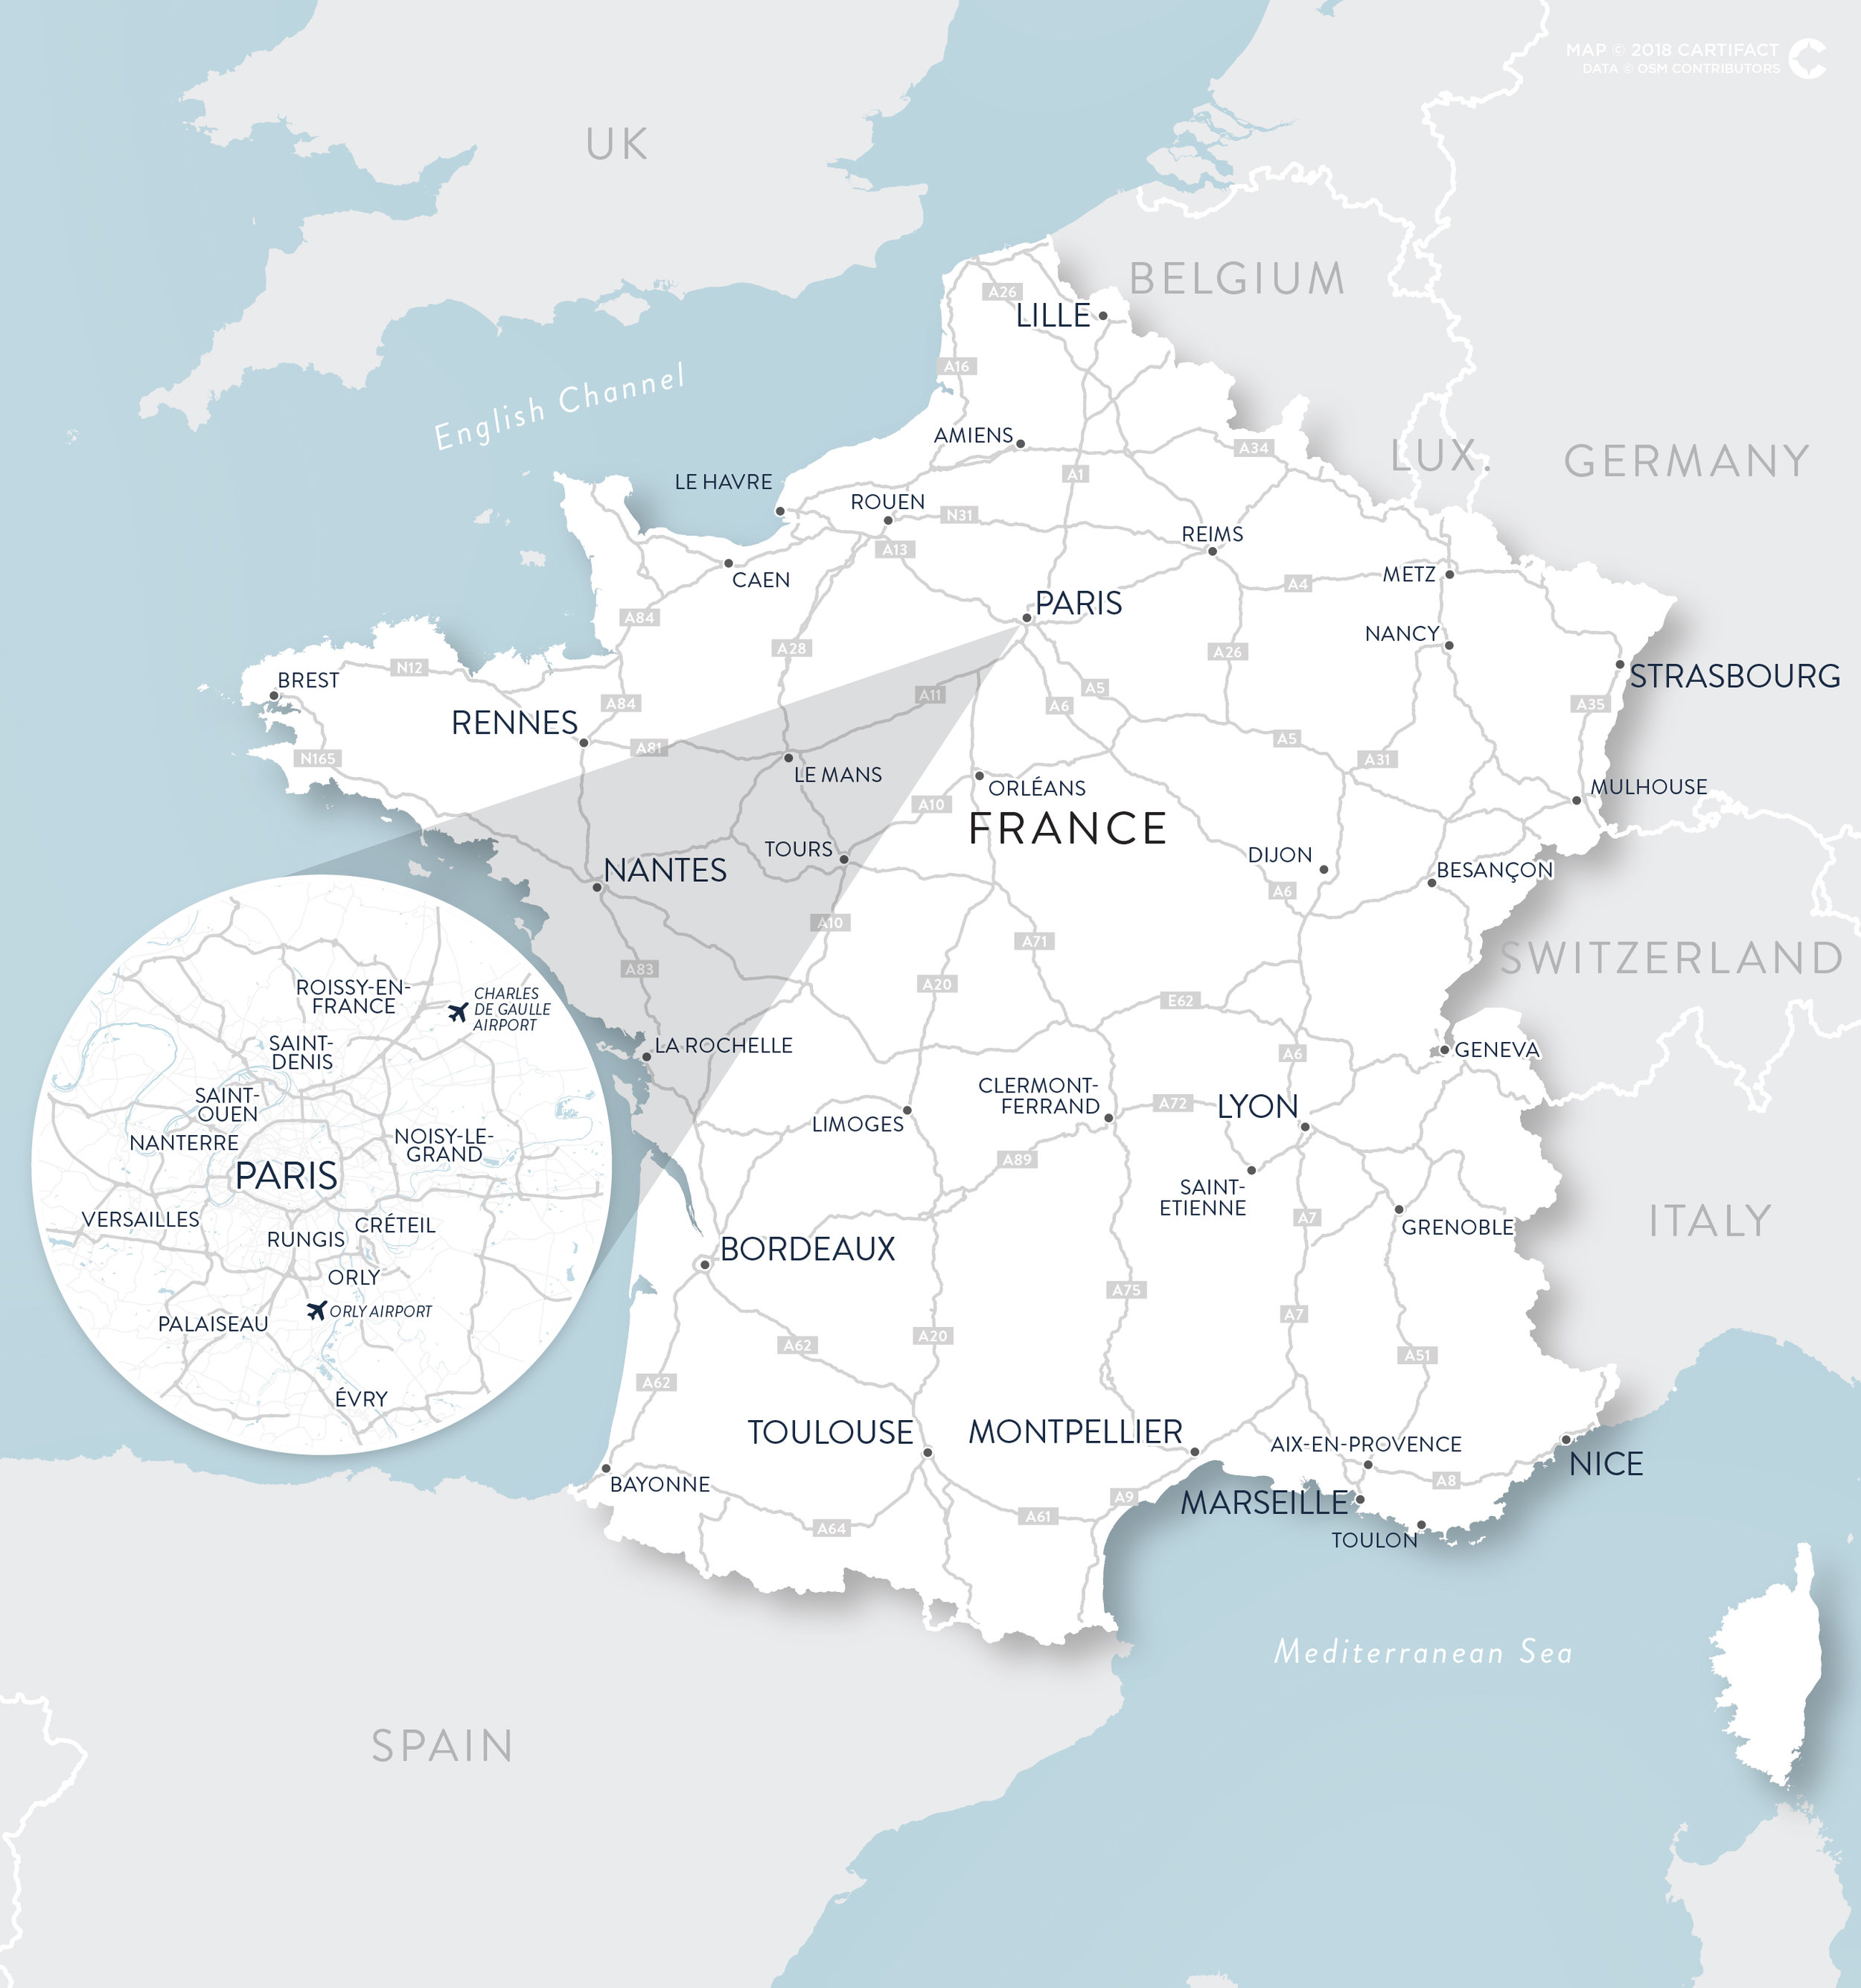 France Map.jpg